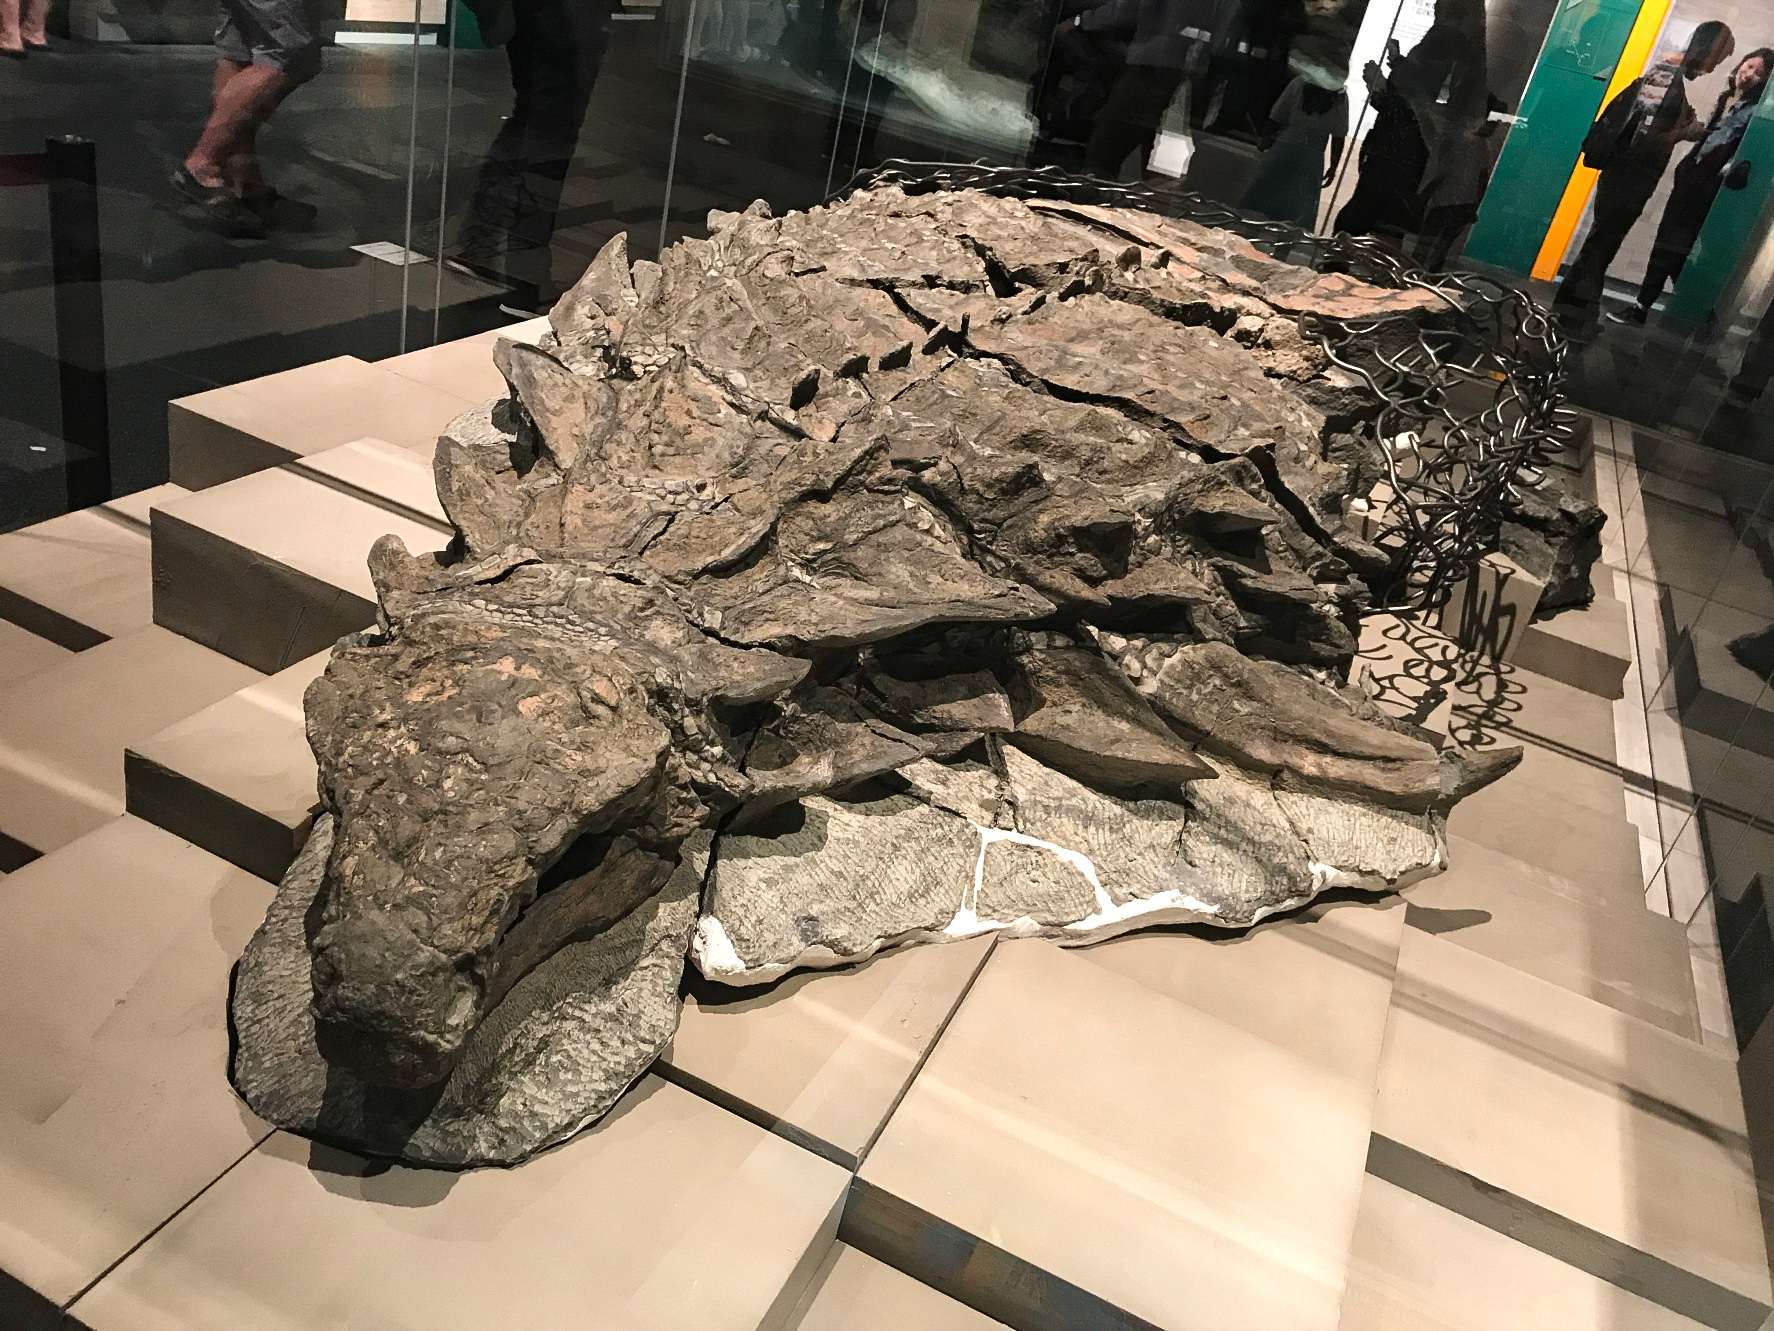 Borealopelta (nke pụtara “ọta ugwu”) bụ mkpụrụ ndụ nodosaurid ankylosaur sitere na Early Cretaceous nke Alberta, Canada. Ọ nwere otu ụdị, B. markmitchelli, aha ya na 2017 site na Caleb Brown na ndị ọrụ ibe ya site na ihe atụ echekwara nke ọma nke a maara dị ka Suncor nodosaur.